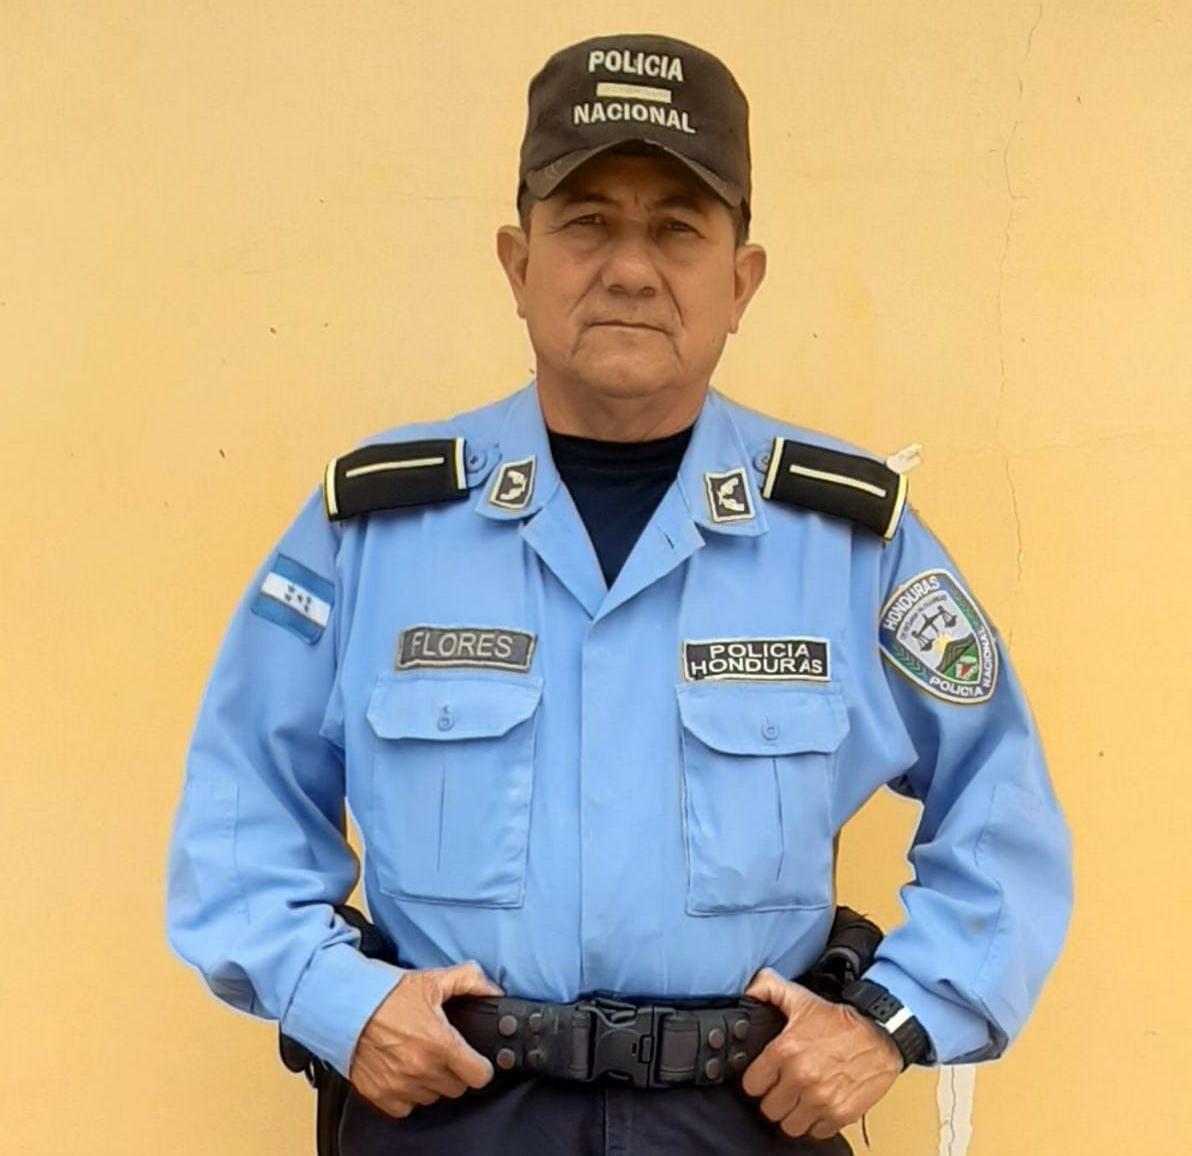 Policía Nacional de Honduras - ¿Quieres ganarte una camiseta de la